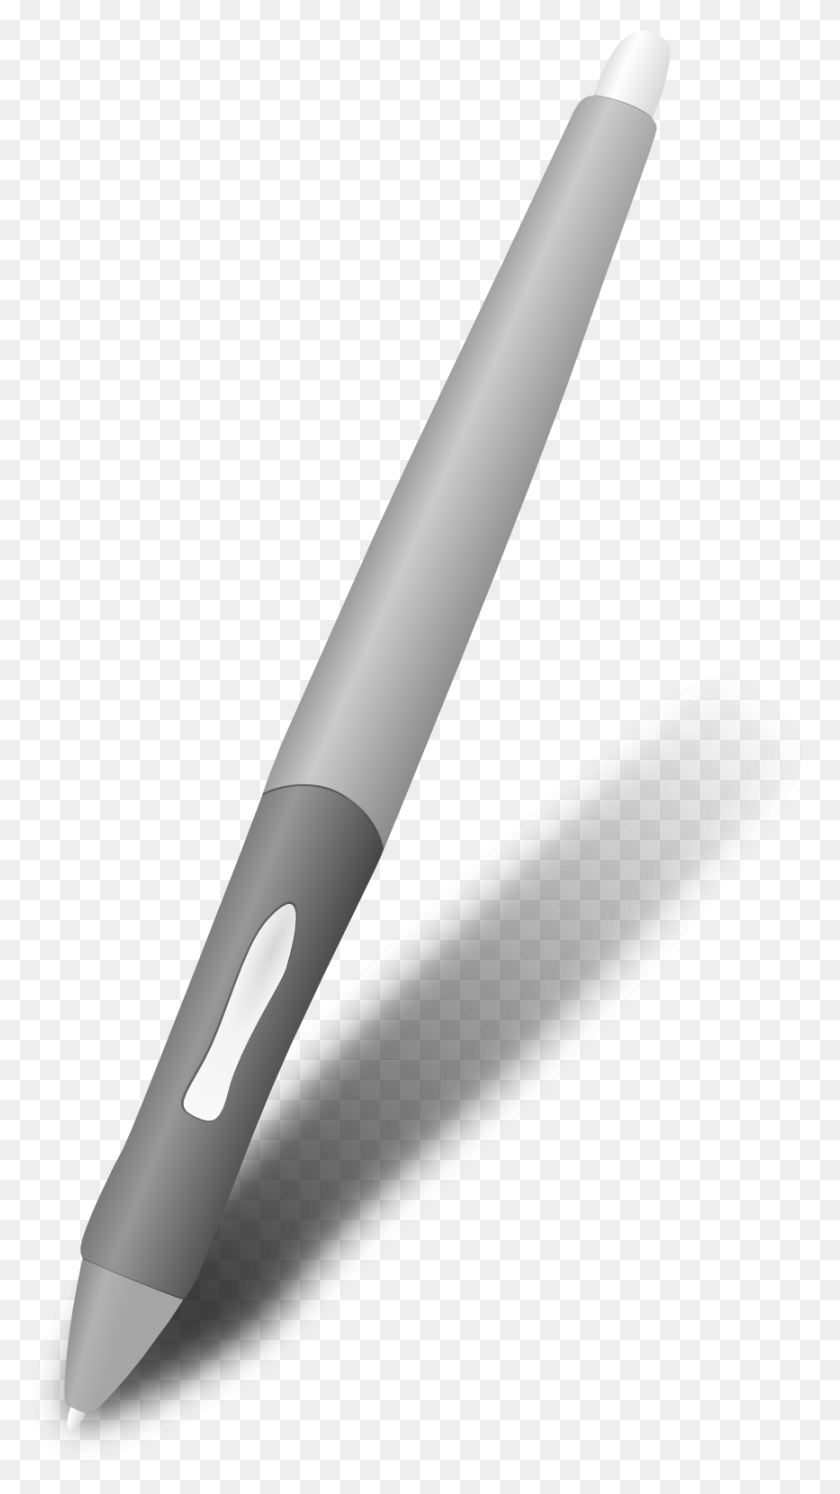 867x1595 A Wacom Pen By Usedhonda A Wacom Pen By Usedhonda Wacom Pen Transparent, Tool, Fountain Pen HD PNG Download